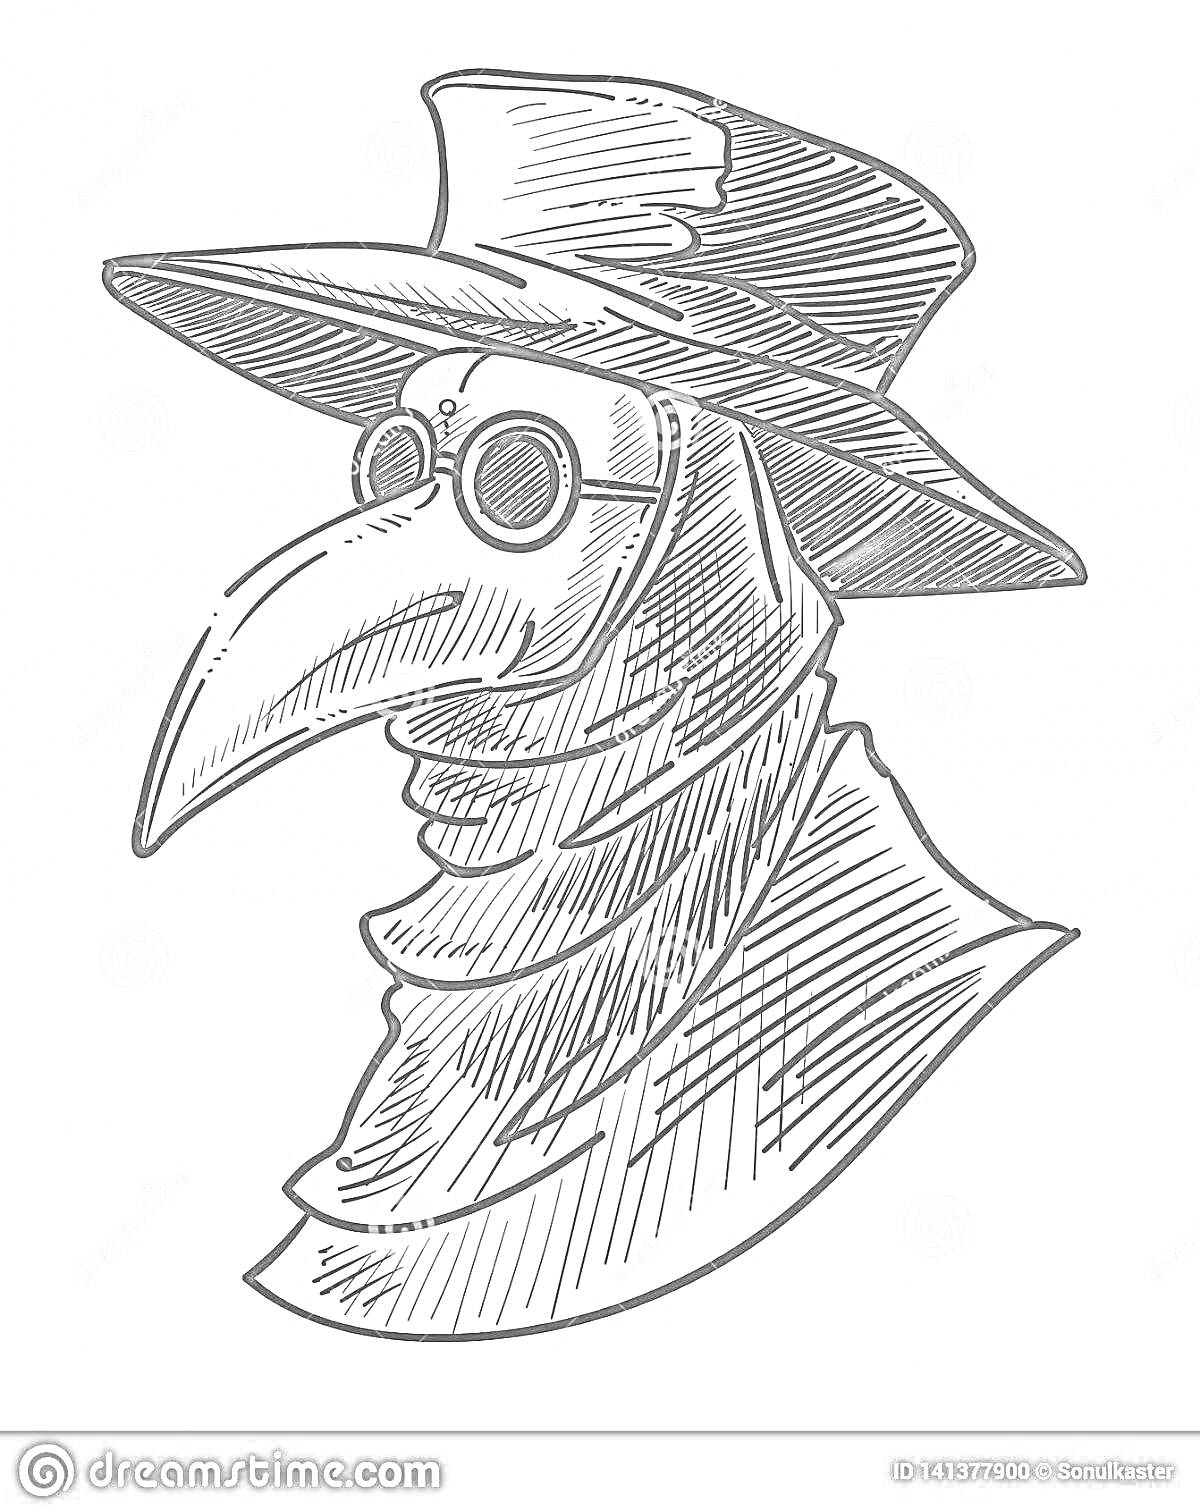 Раскраска Чумной доктор в широкополой шляпе и маске с длинным клювом